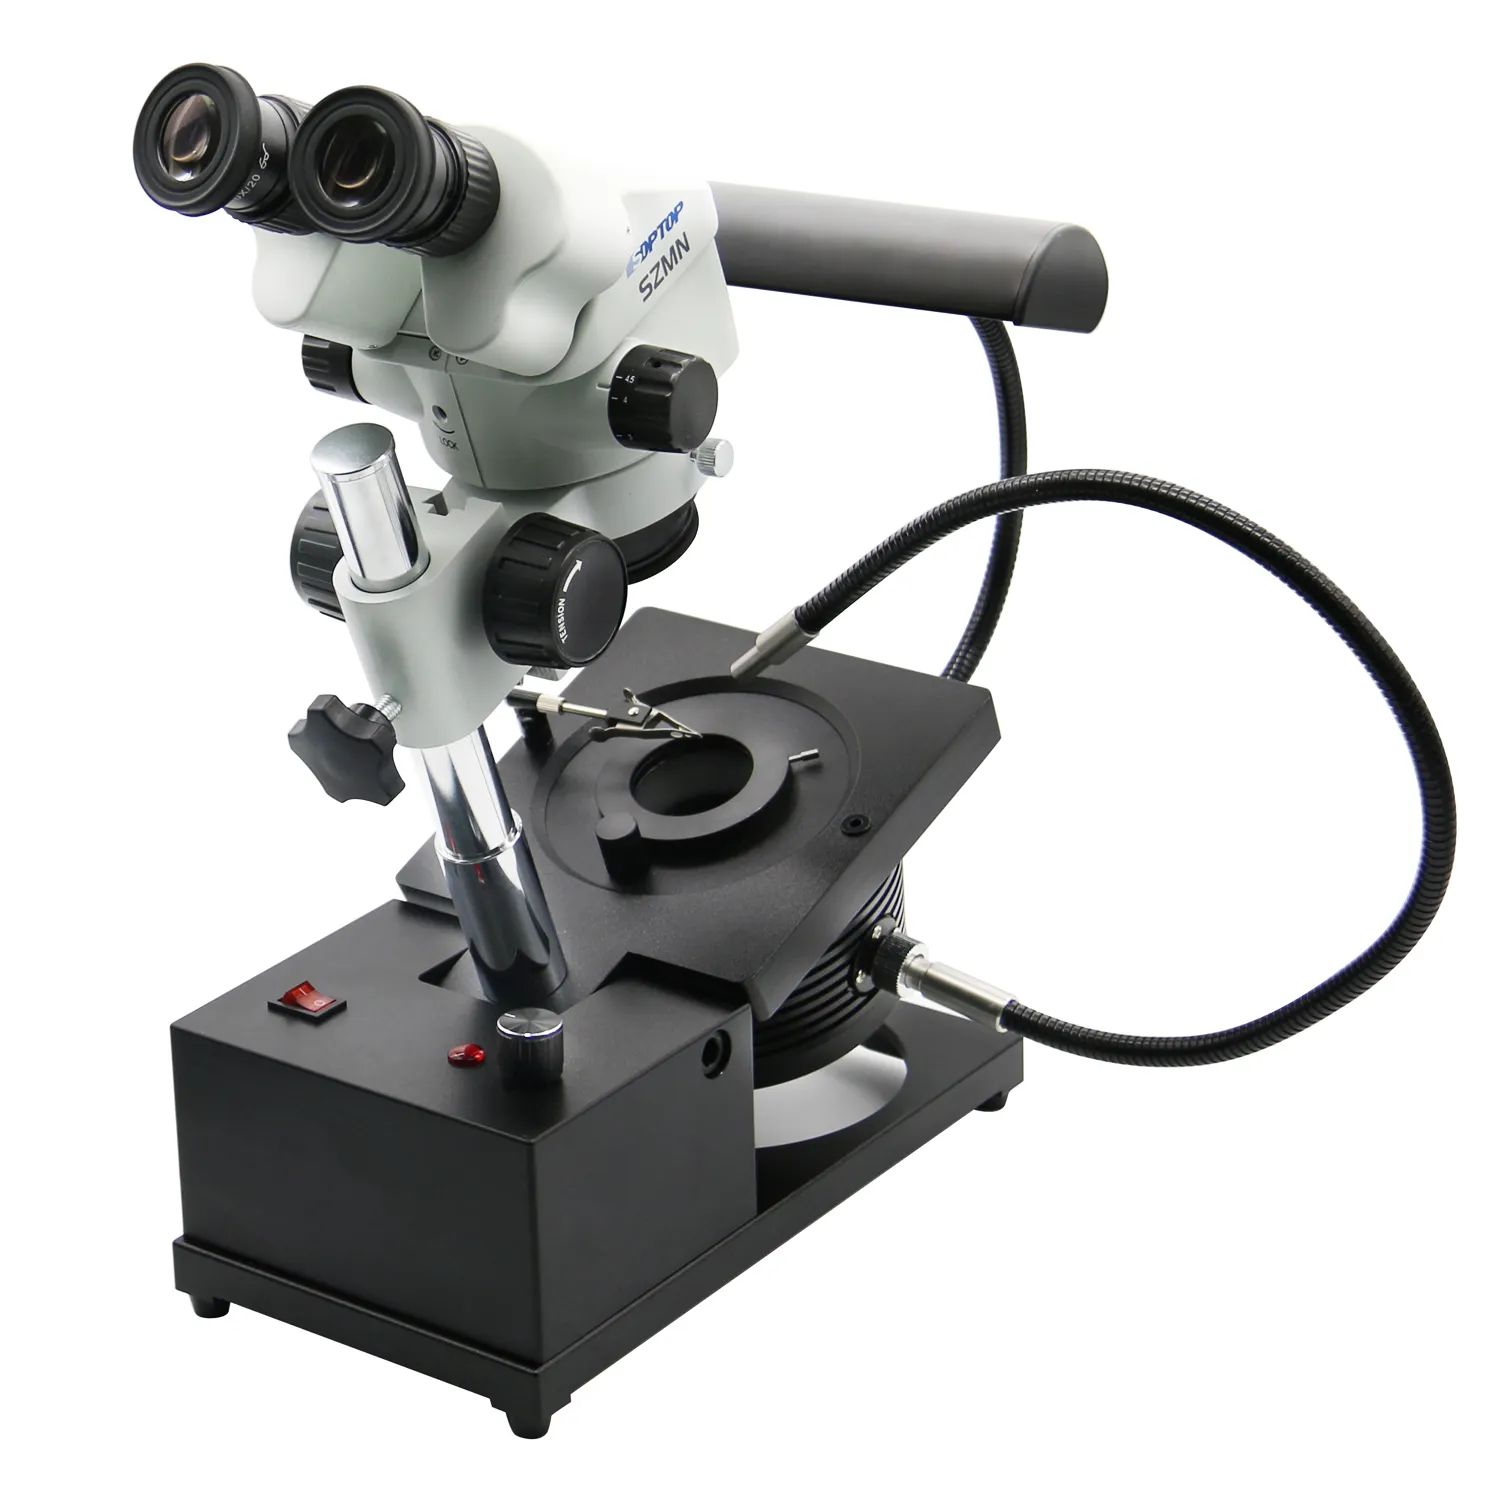 Fable Adjusta ble Binocular Jewelry Mikroskop, gemo logische profession elle High-Definition-Verwendung zur Identifizierung